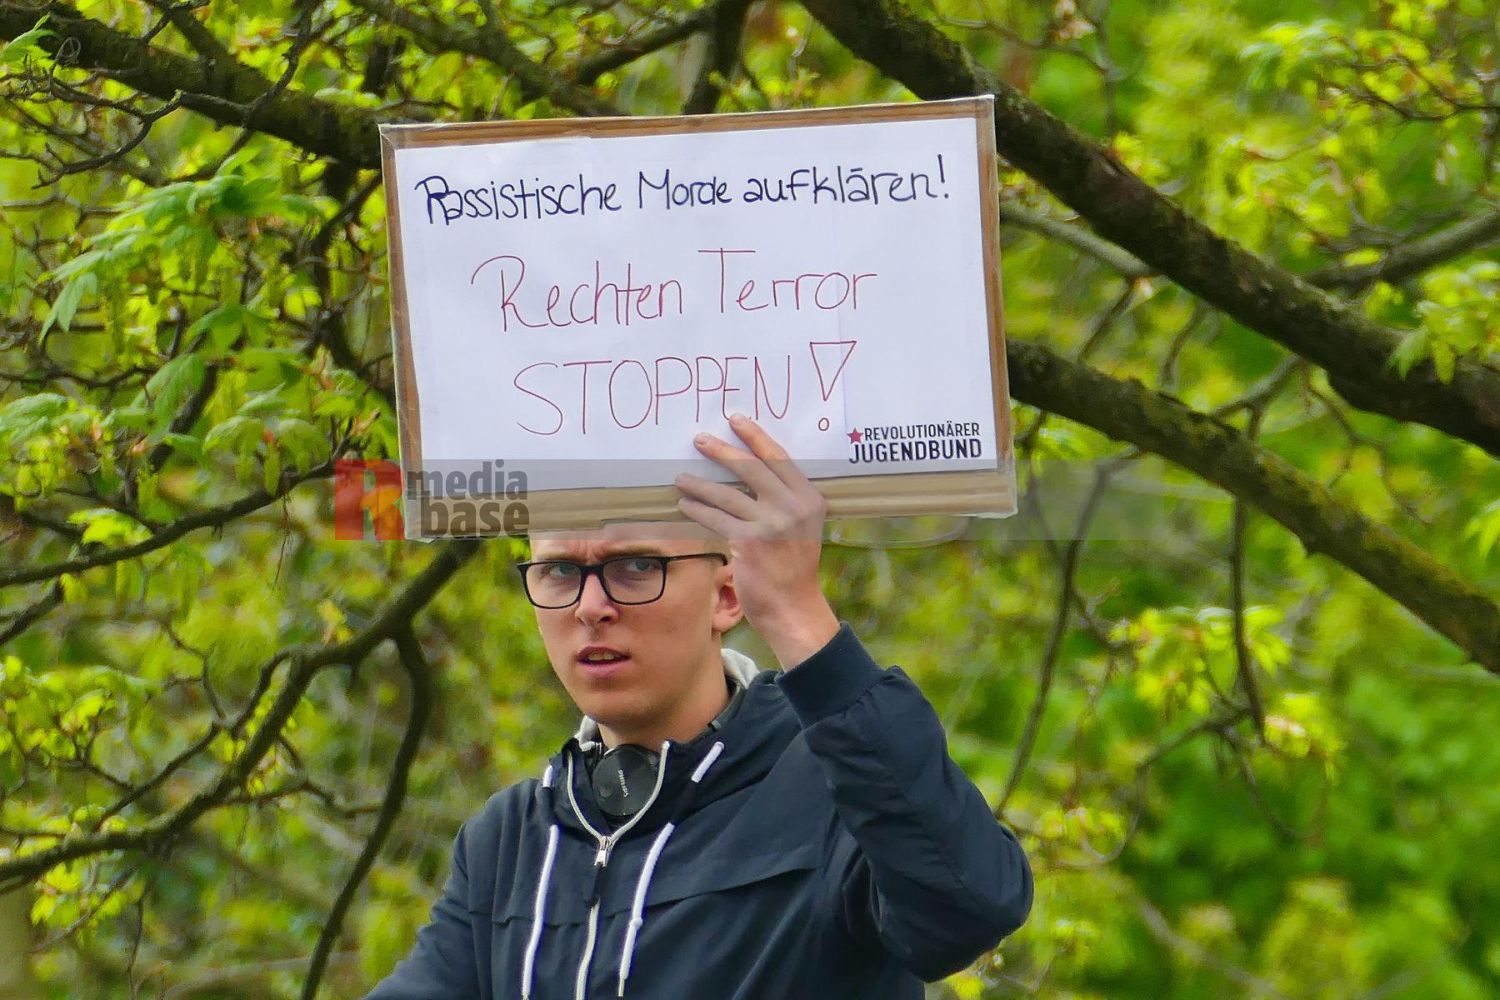 Protestaktionen gegen die Demonstration der Partei Die Rechte in Dortmund am 1. Mai 2022 unter dem Motto Heraus zum Tag der Arbeit <i>Bild Anonymus/R-mediabase</i> <br><a href=/confor2/?bld=65443&pst=65423&aid=597&dc=1415&i1=Anonymus/R-mediabase>Anfrage Download Bild 65443</a>  <a href=/wp-admin/post.php?post=65443&action=edit> / Edit</a><br><a href=/?p=65423>Zum Beitrag 65423</a>